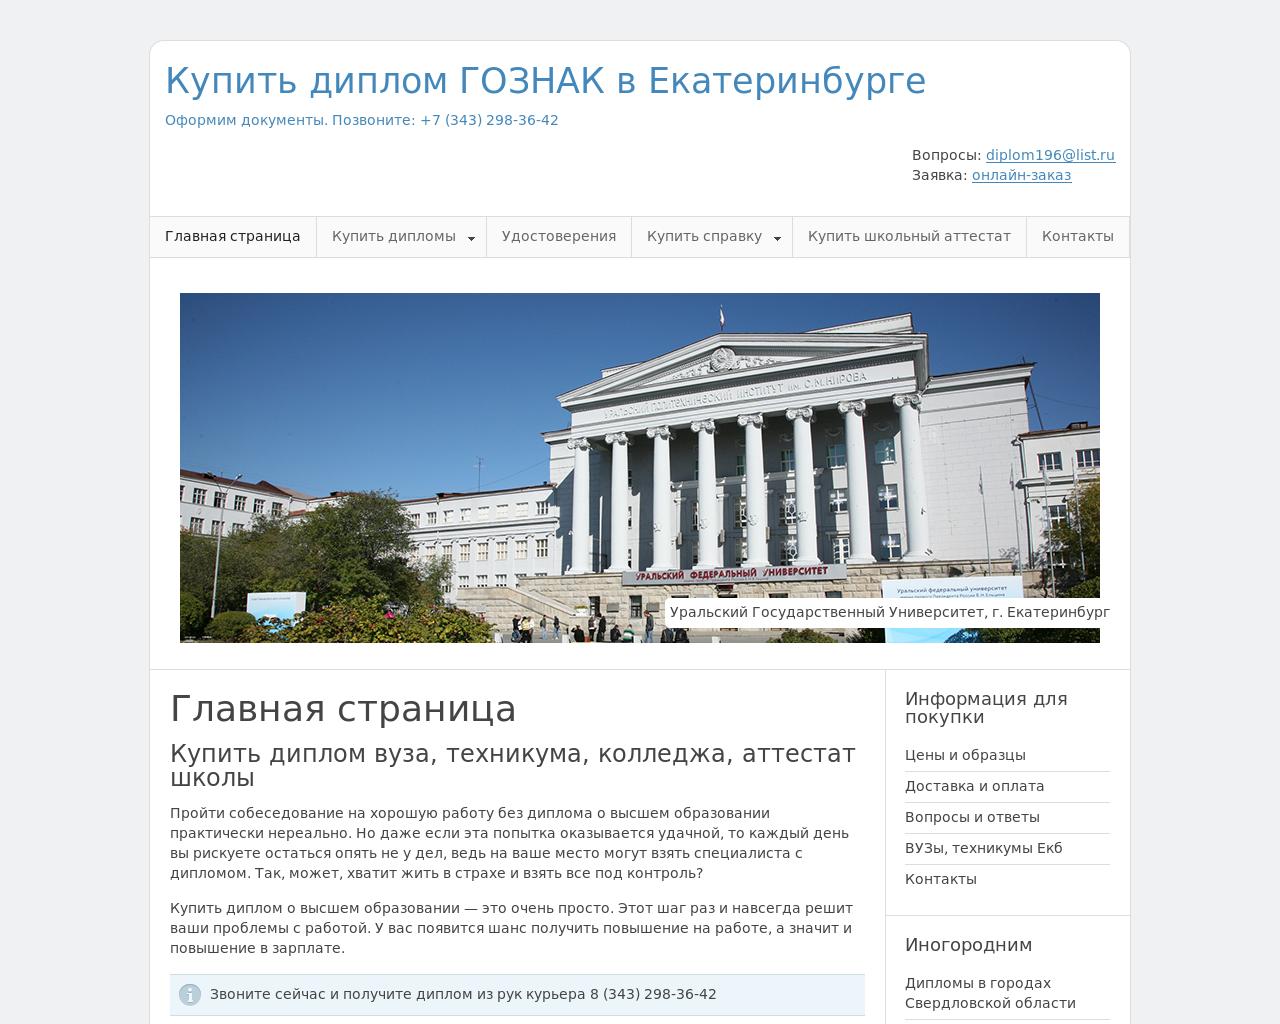 Изображение сайта diplom196.ru в разрешении 1280x1024